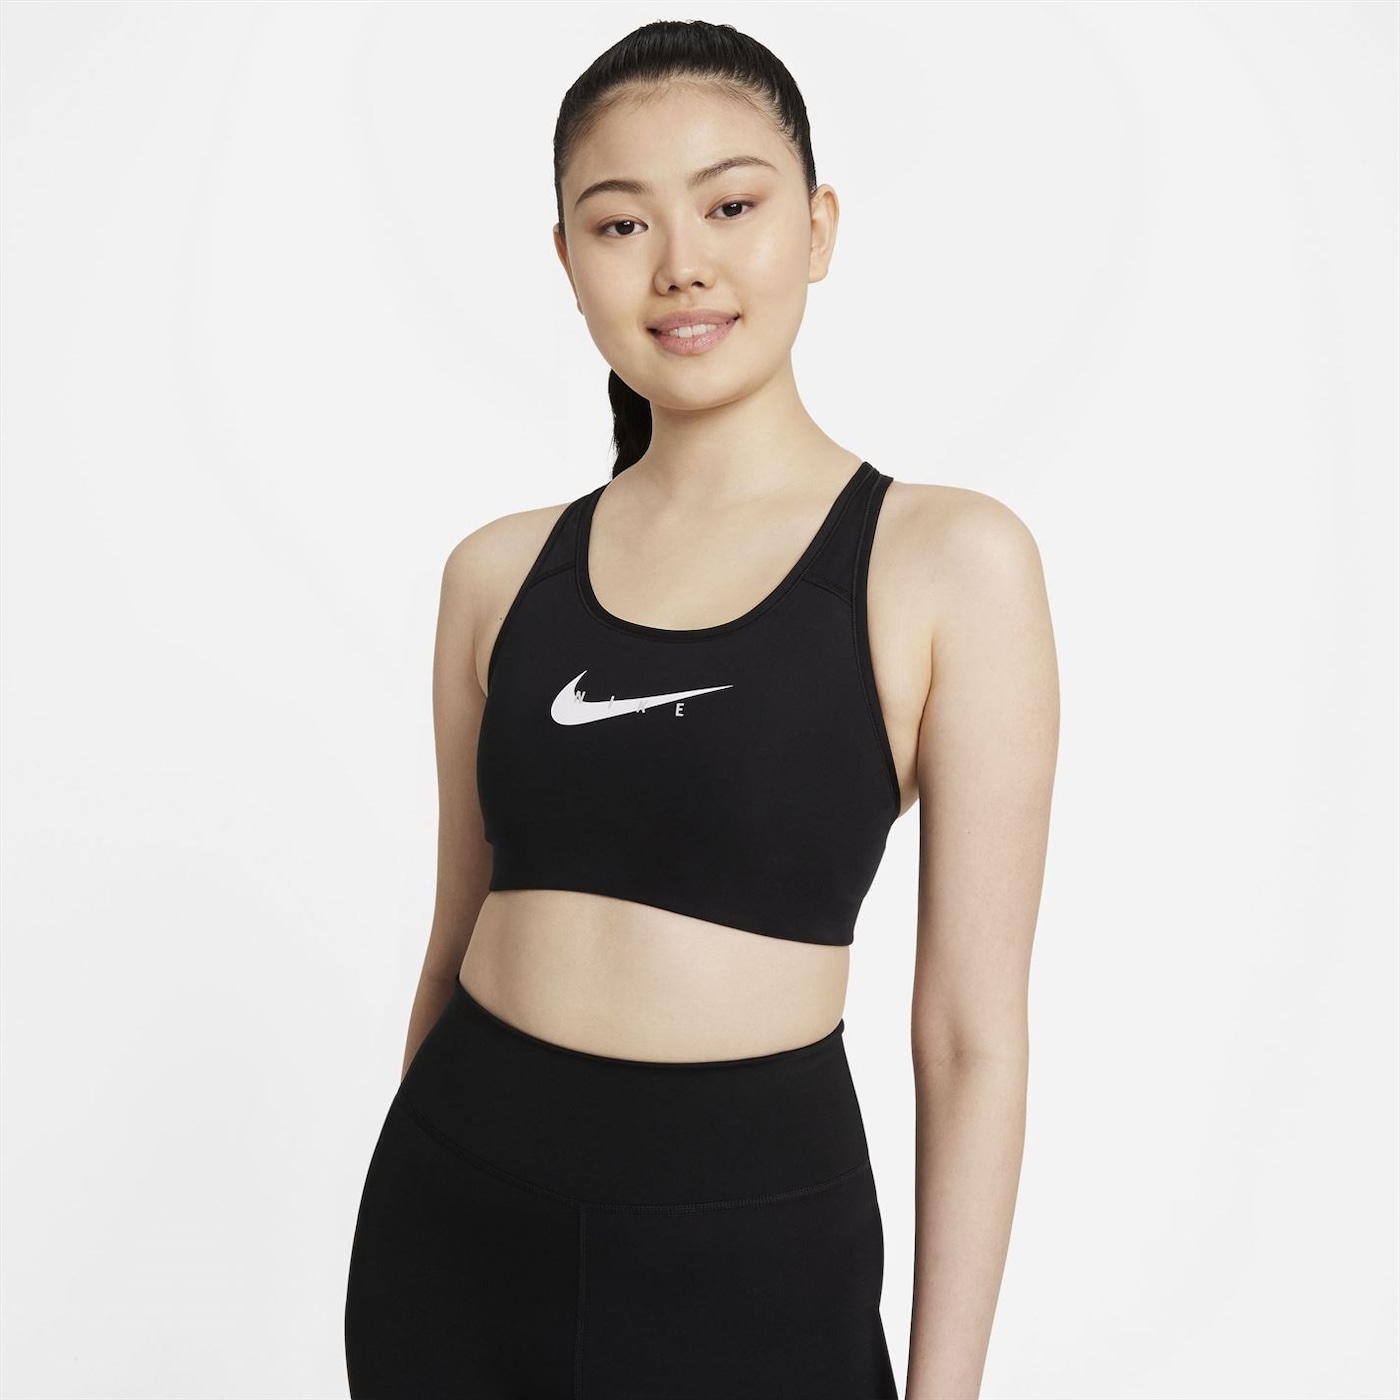 Жени  Дамско облекло  Бельо  Сутиени  Спортни сутиени Nike Swish Sports Bra 1547571-8107801